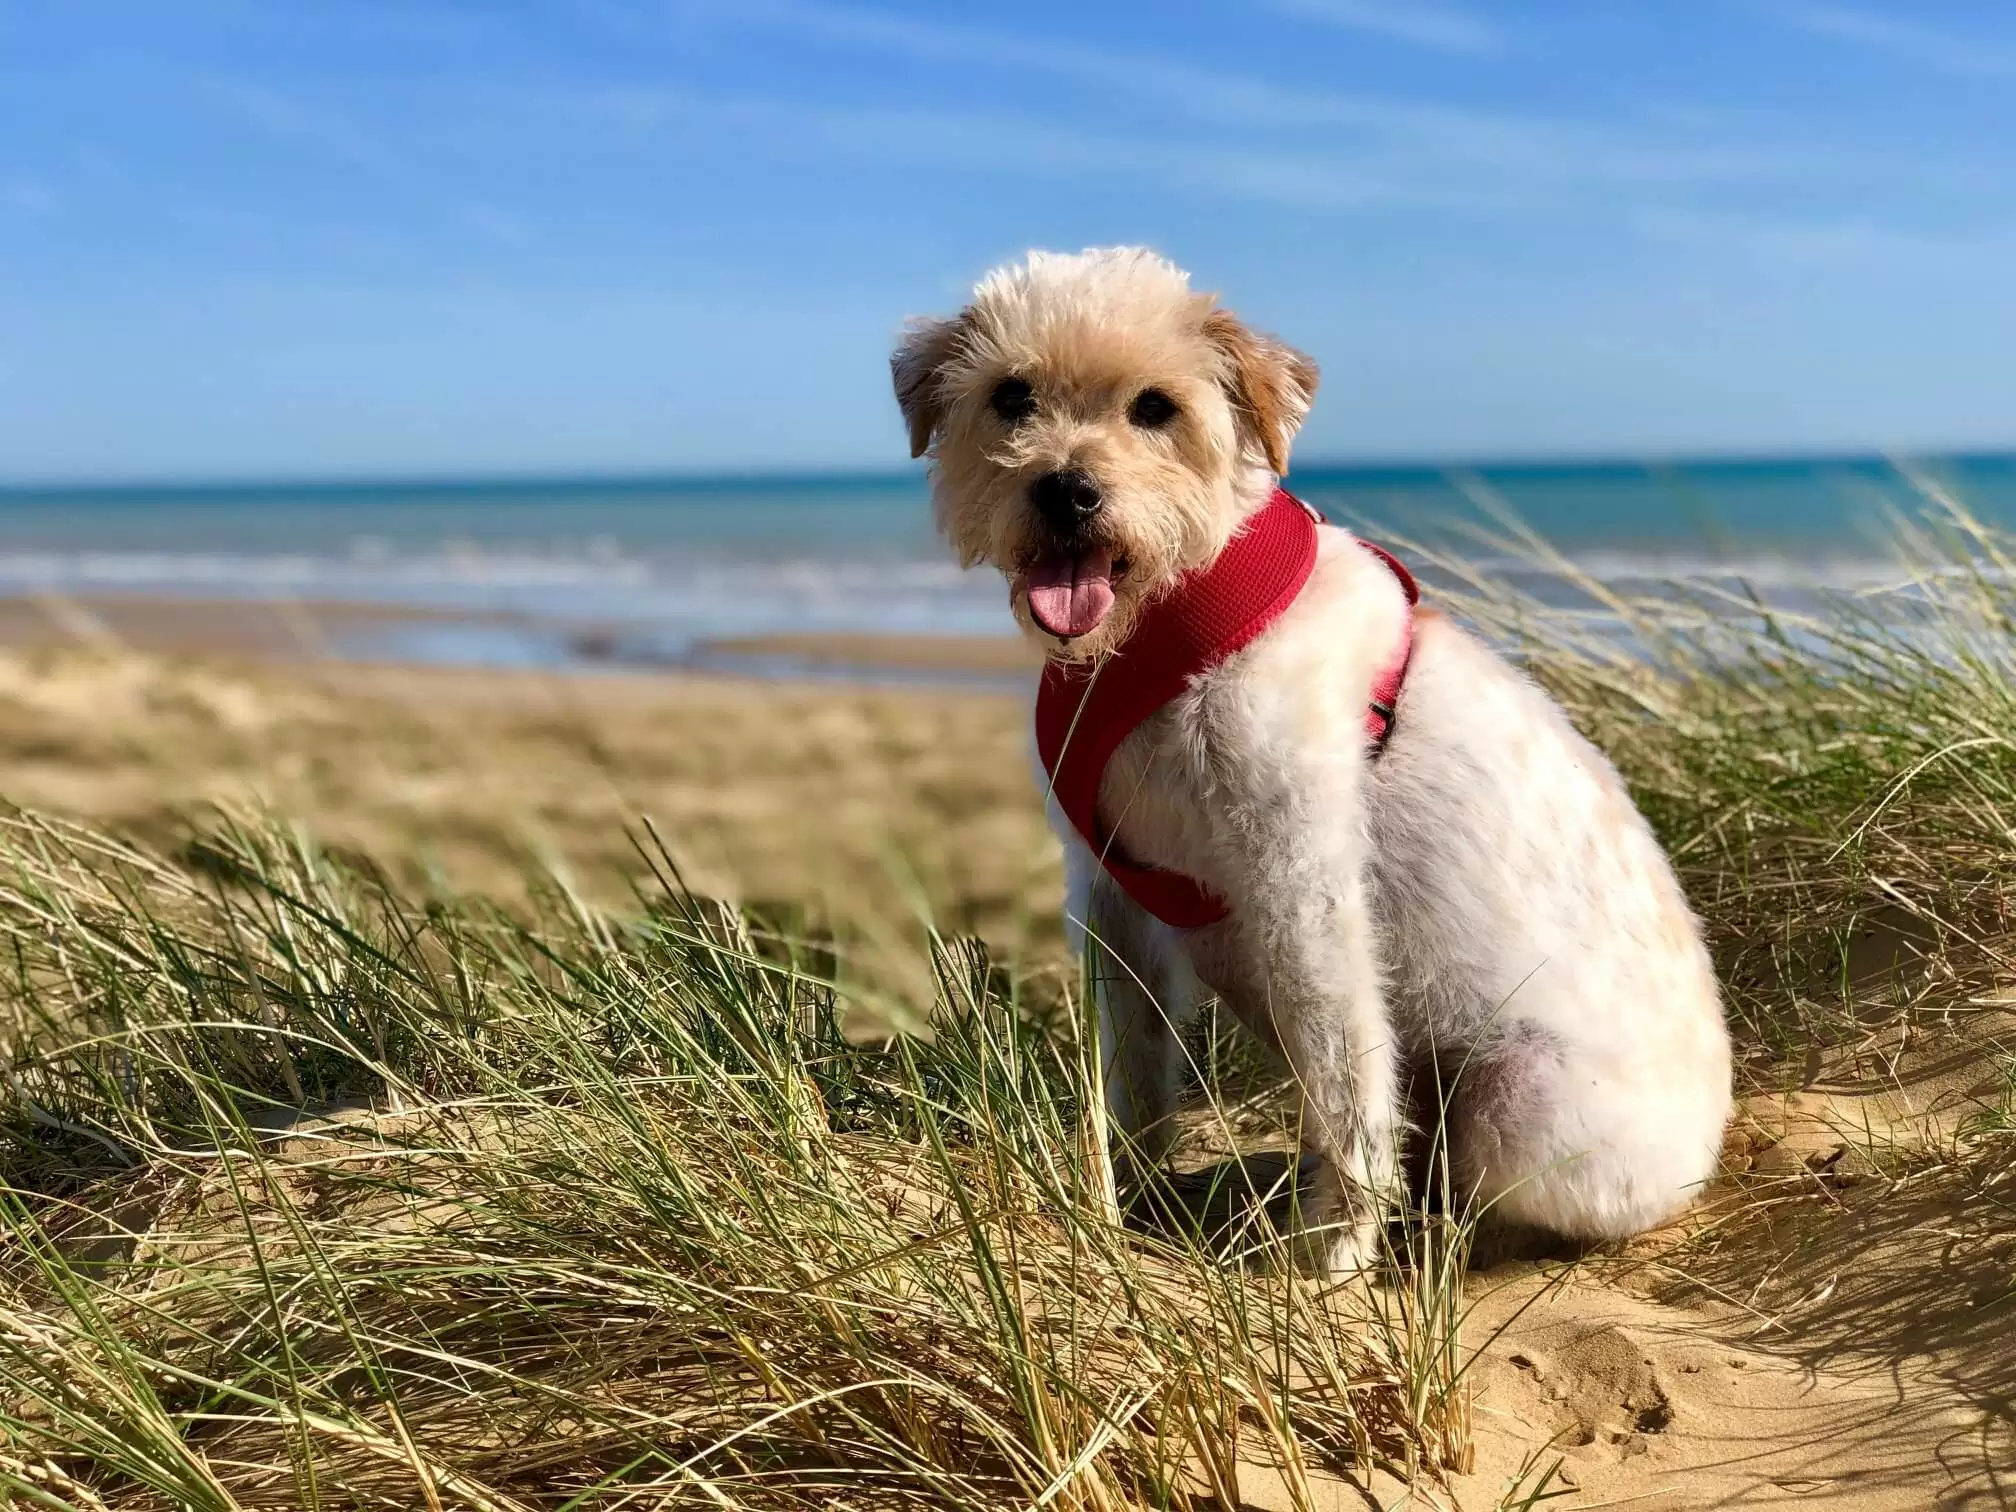 Oscar on the Beach